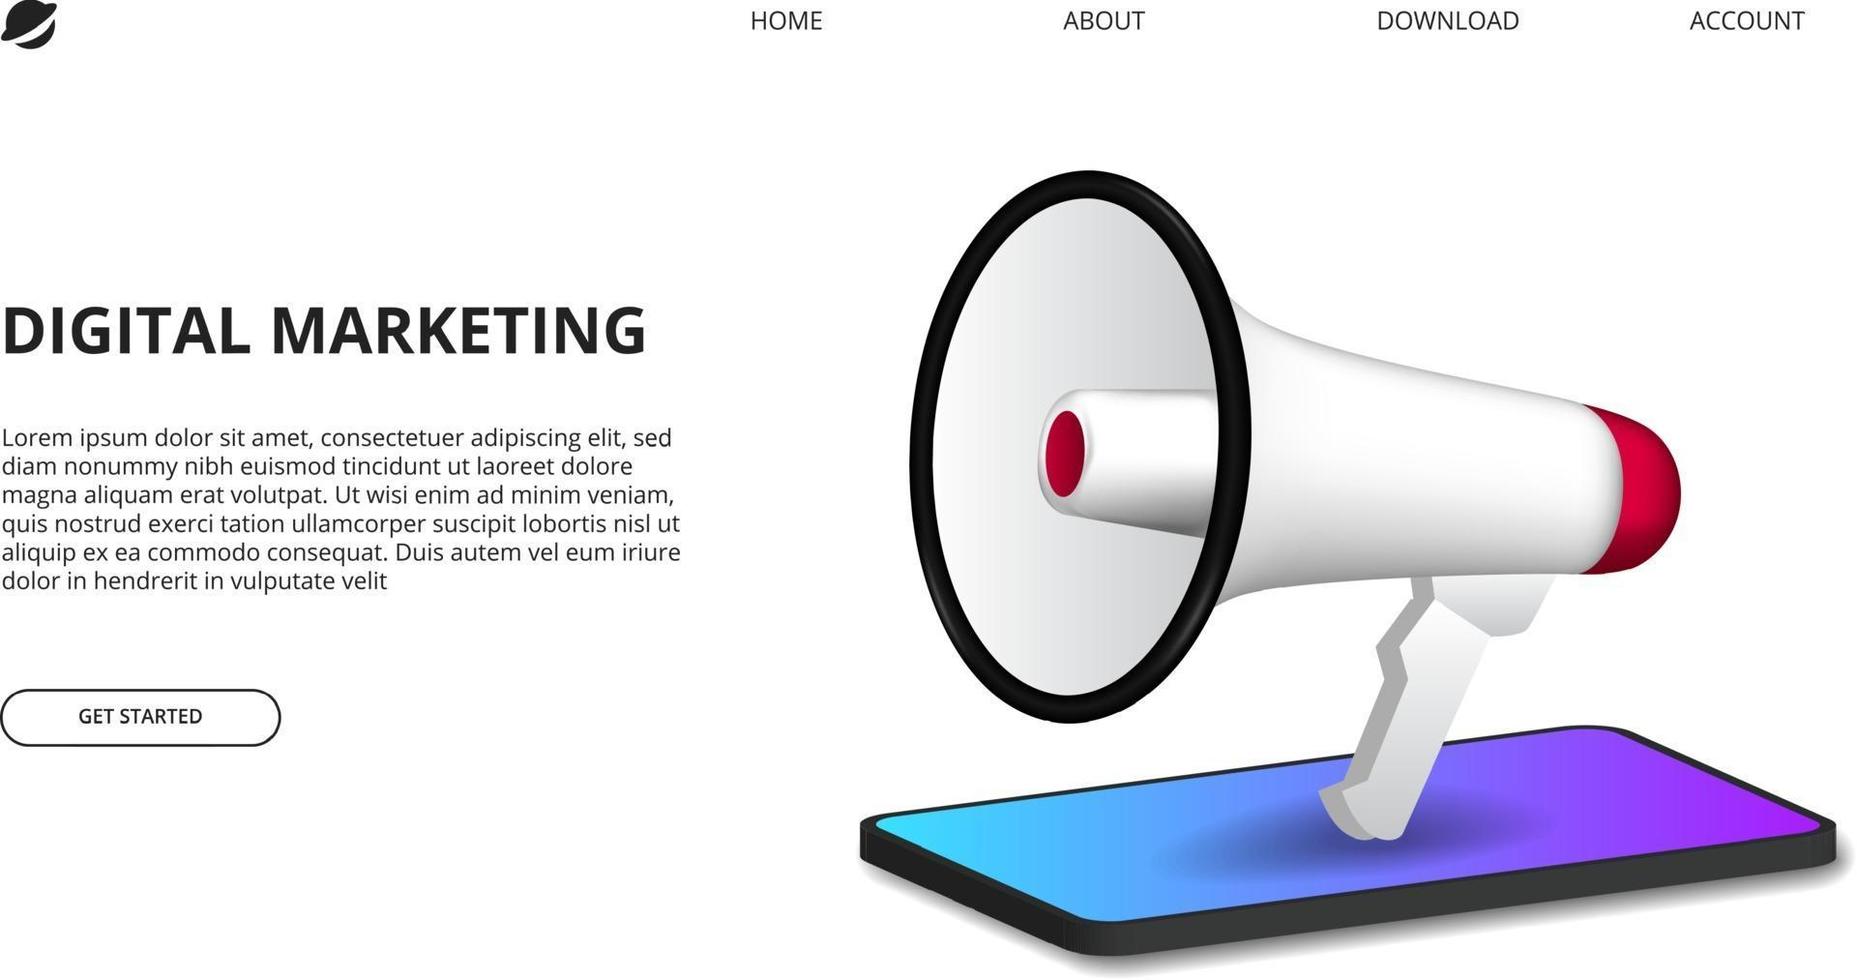 digitaal marketingconcept met illustratie van megafoon met perspectief 3d smartphone voor reclame op internet vector